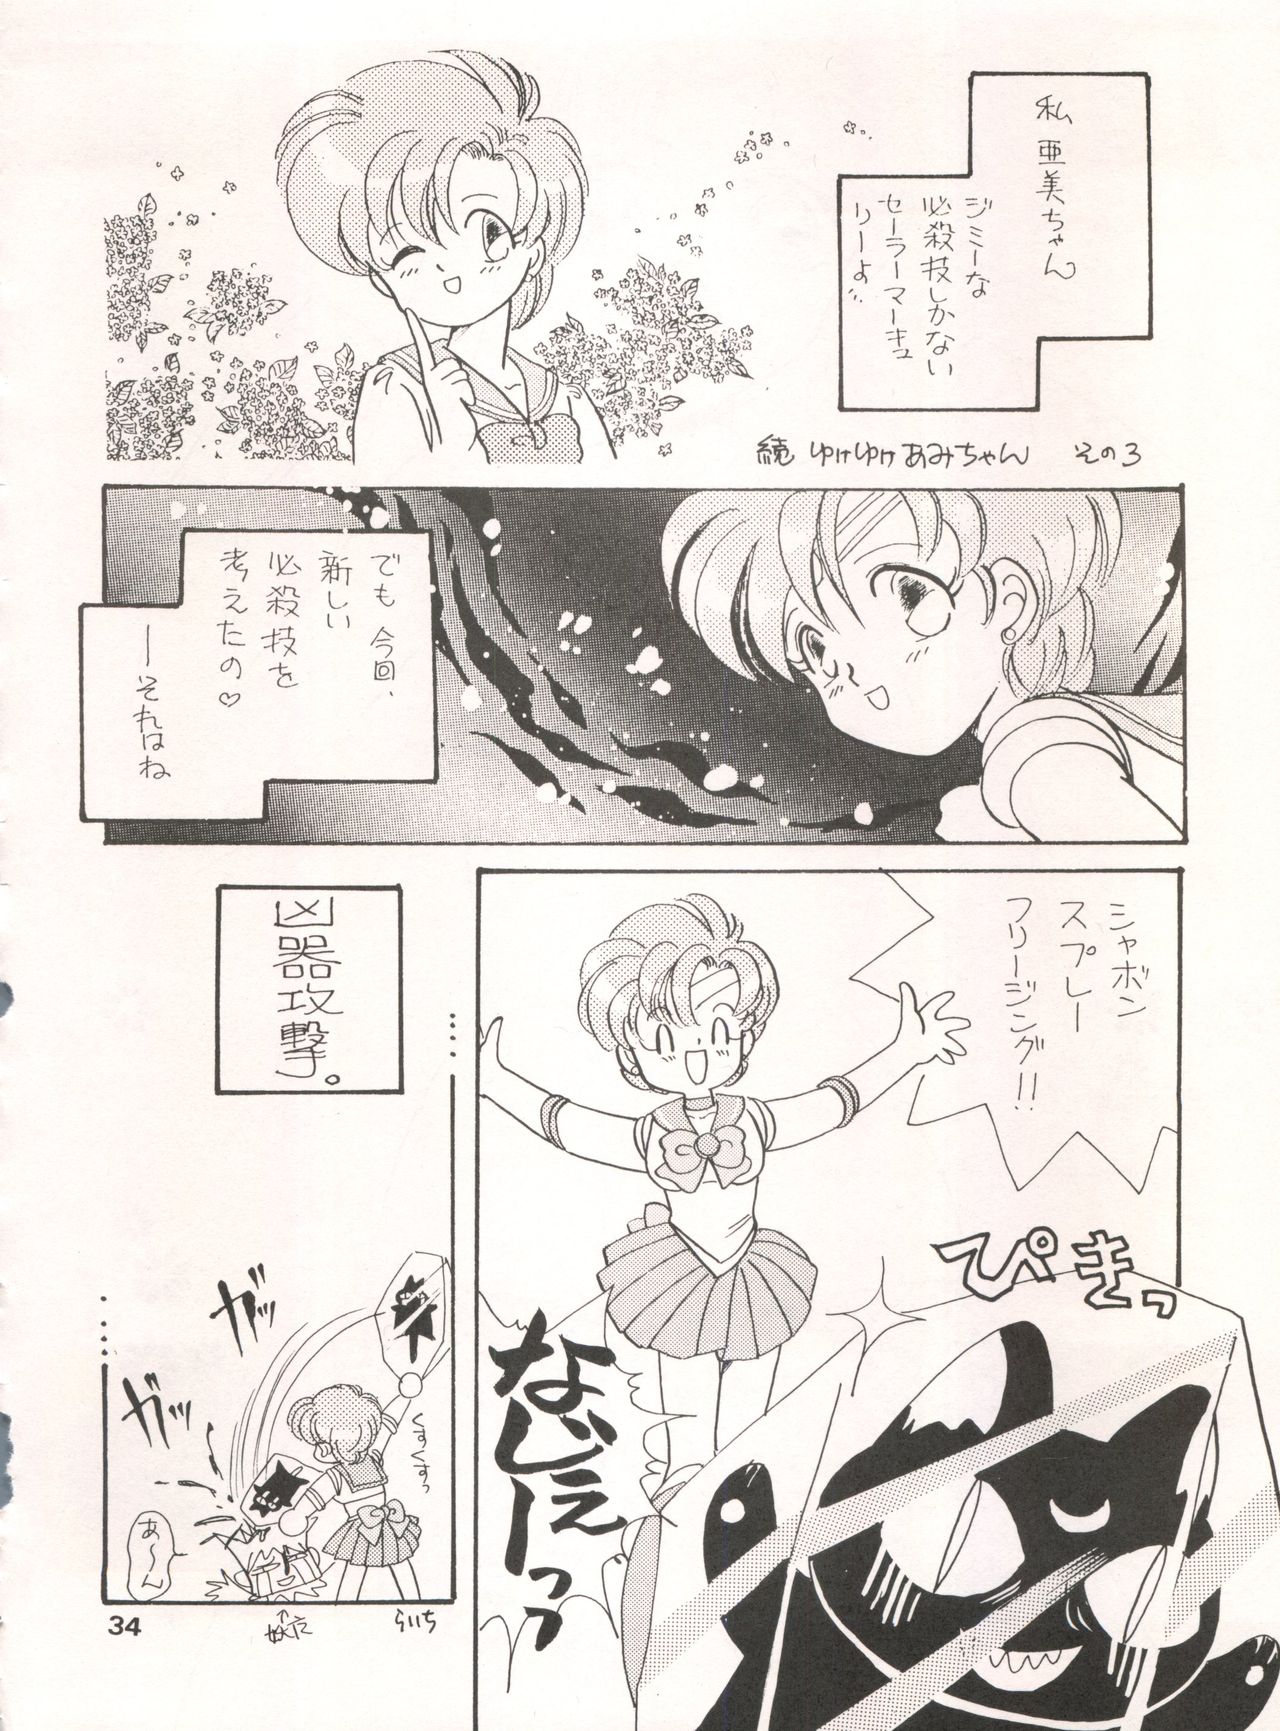 [Tsuketara B-Cup Bra no Kai] Olive 3 (Bishoujo Senshi Sailor Moon, Hana no Mahou Tsukai Marybell) page 35 full